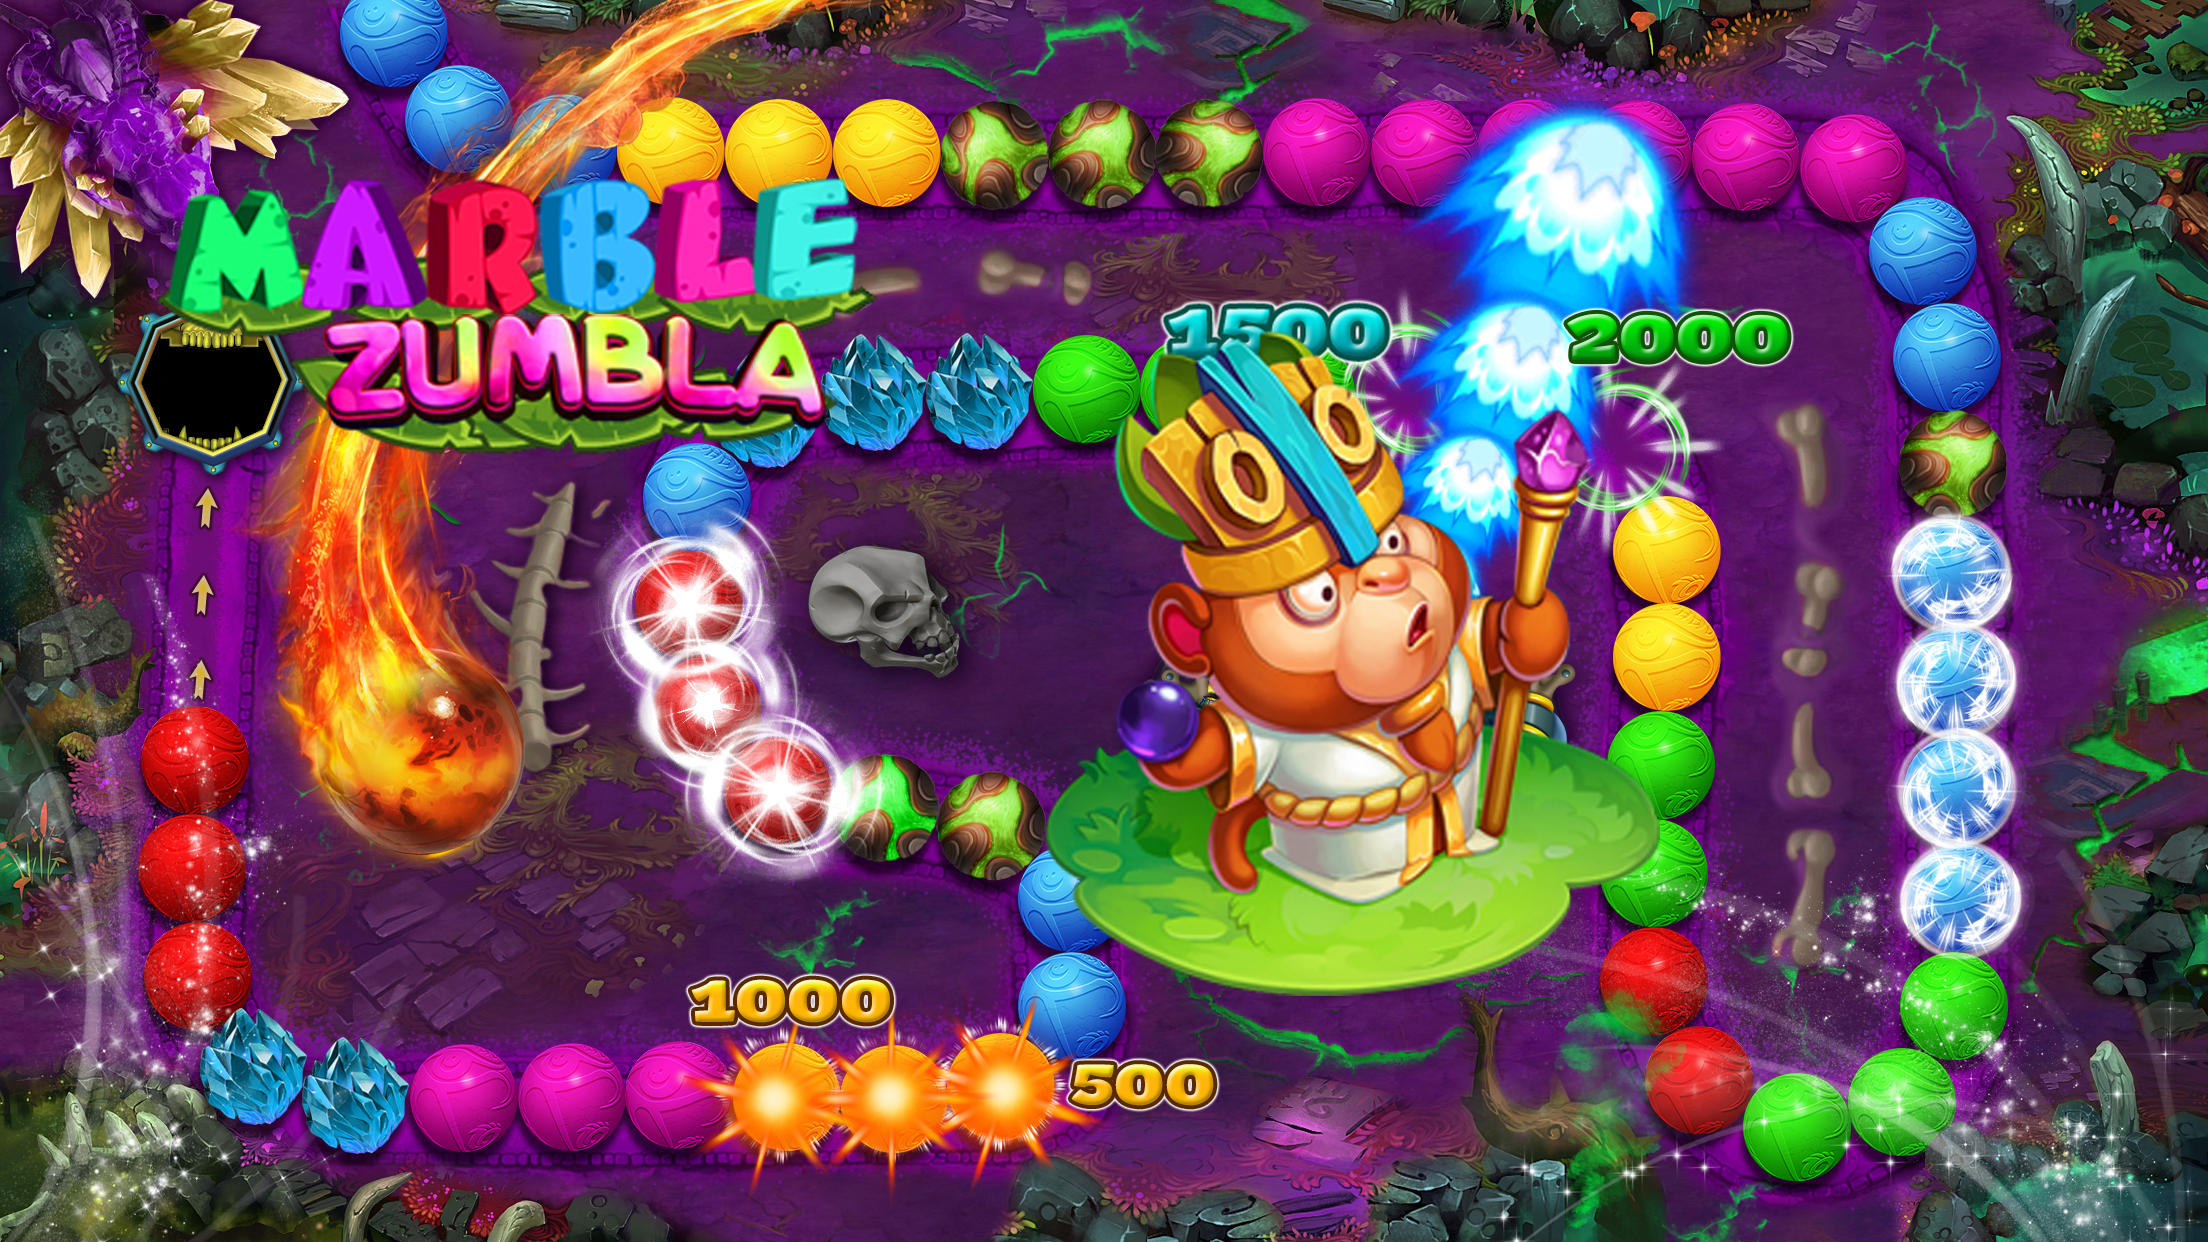 Jungle Marble Blast - Apps on Google Play